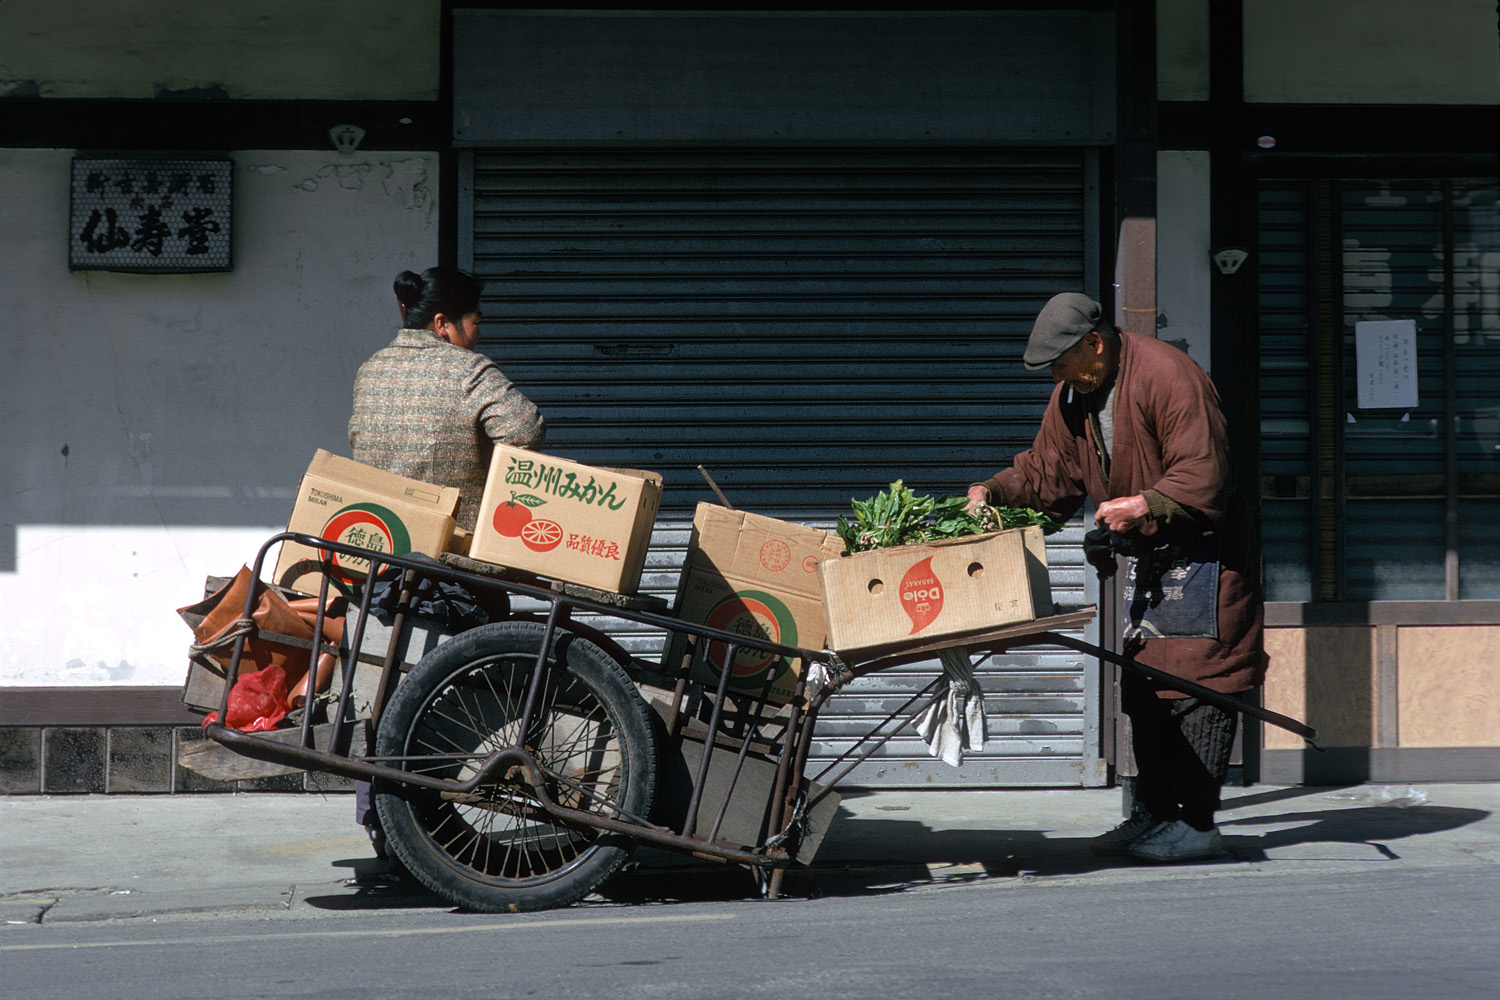 bill-hocker-vegetable-vendor-japan-1979